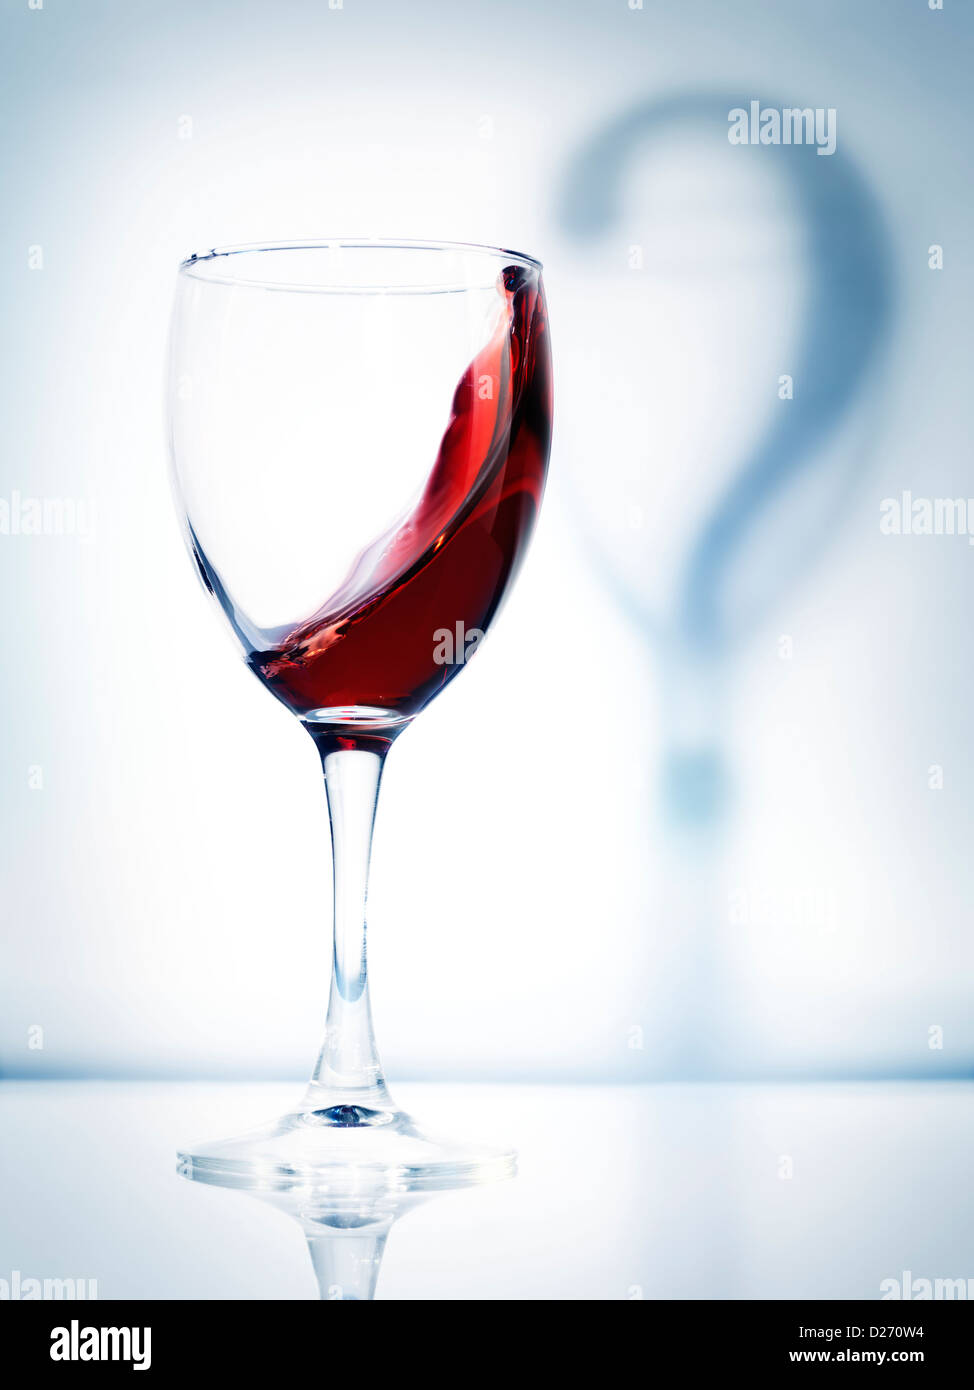 Verre de vin rouge et un point d'interrogation ombre photo conceptuelle artistique isolé sur fond bleu clair Banque D'Images